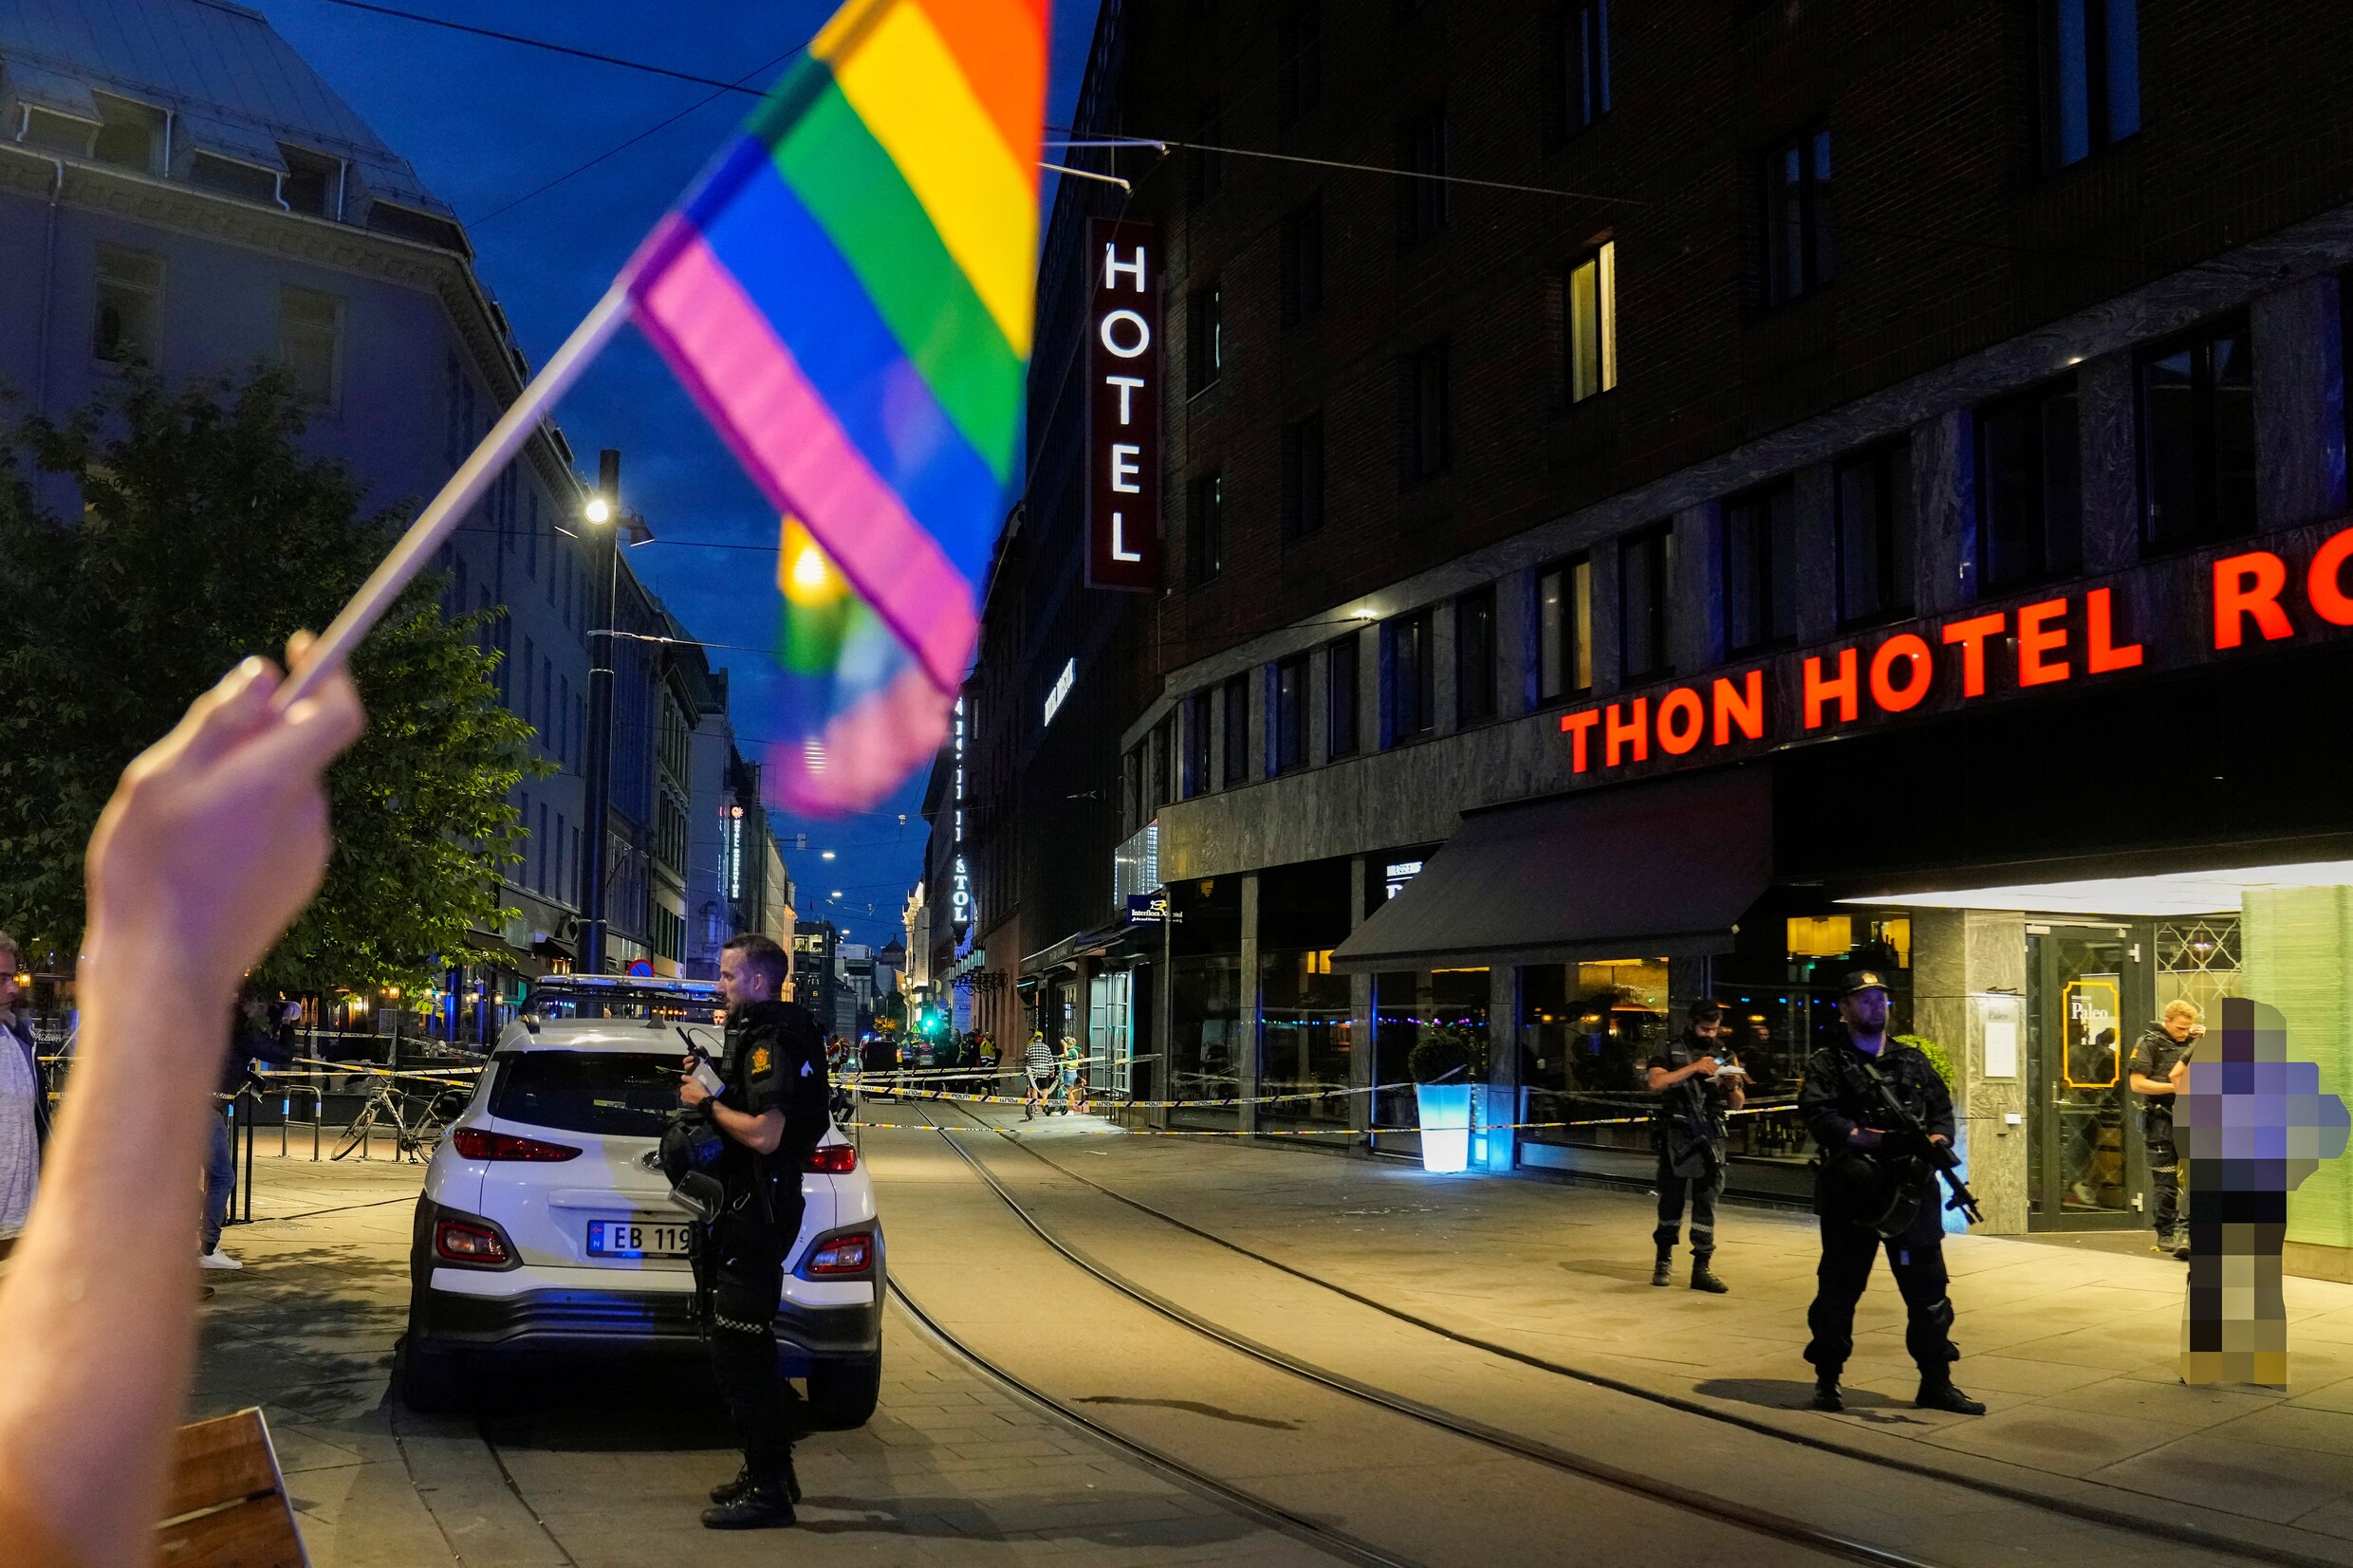 Noorwegen verhoogt terreurniveau na dodelijk schietincident in homobar Oslo